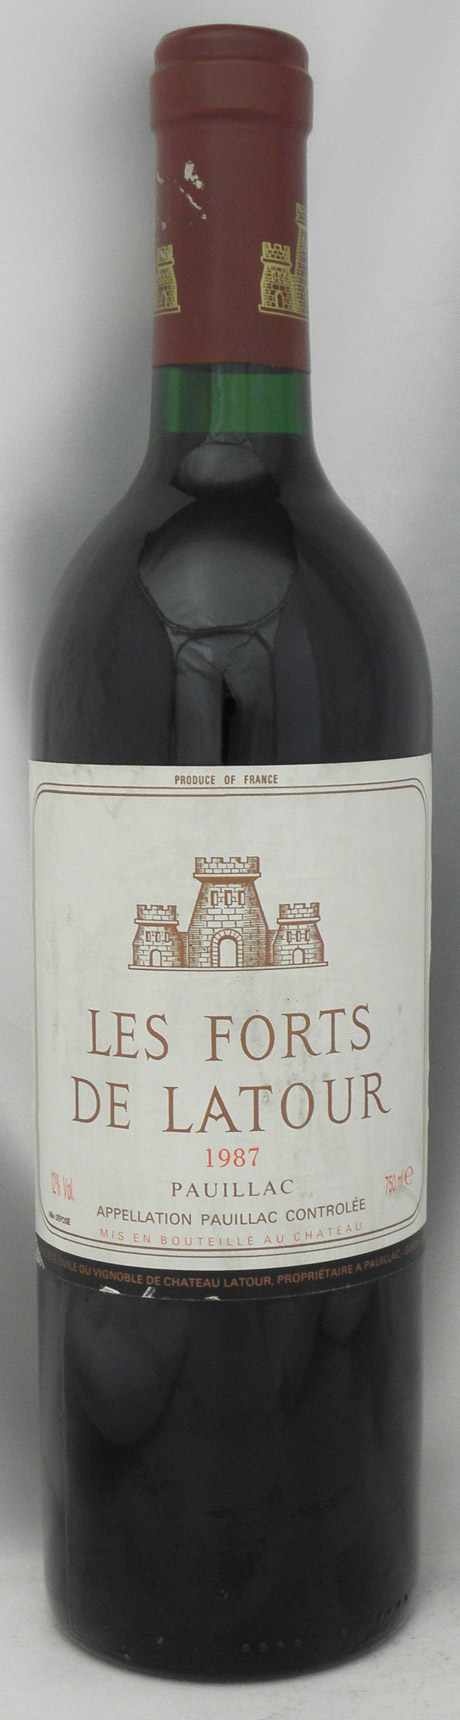 品質が完璧 Les Forts de Latour 1988 レ フォール ド ラトゥール